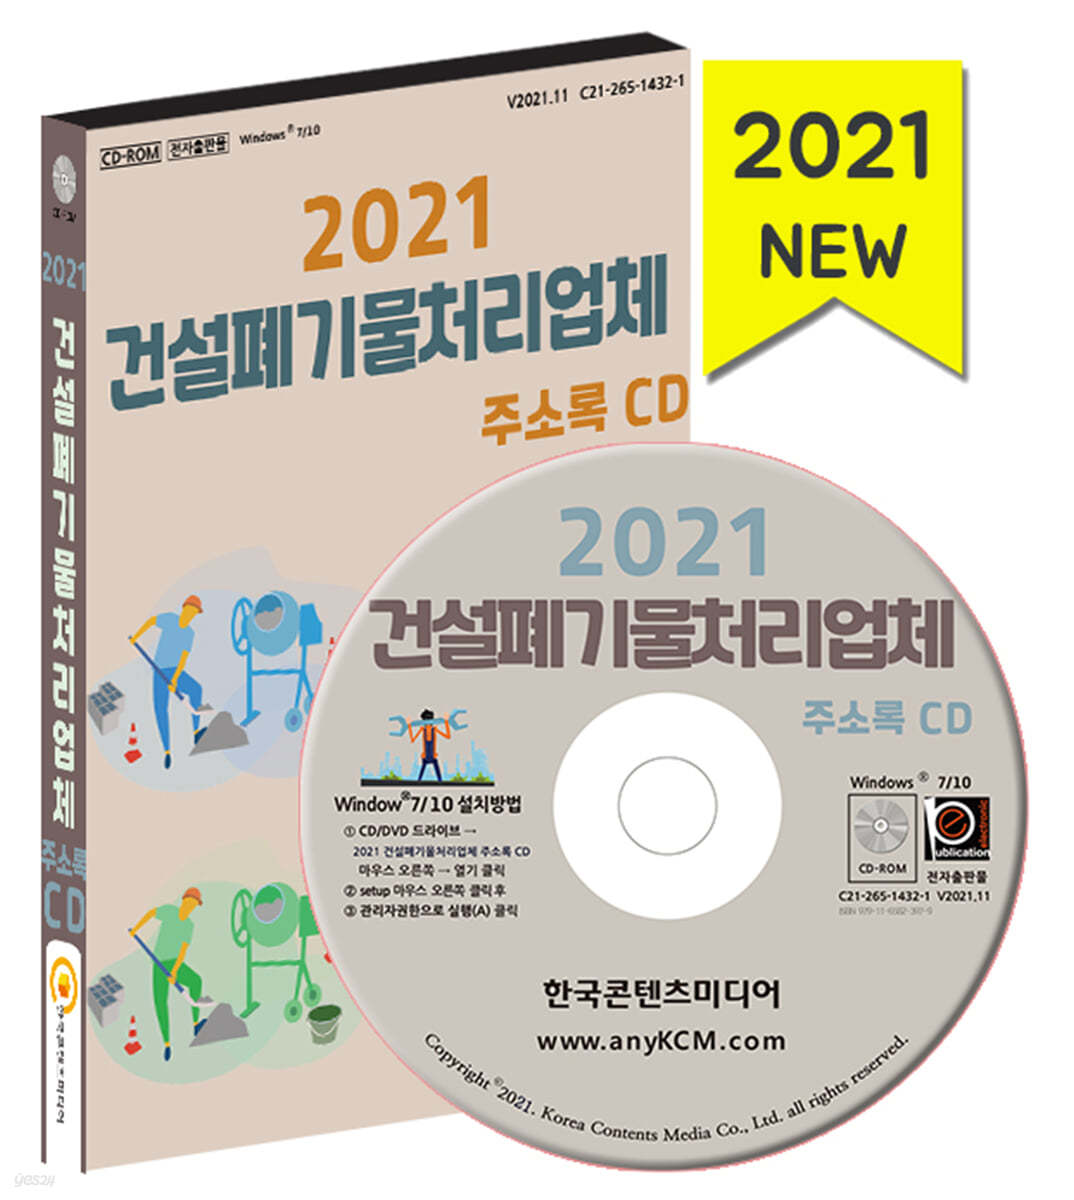 2021 건설폐기물처리업체 주소록 CD